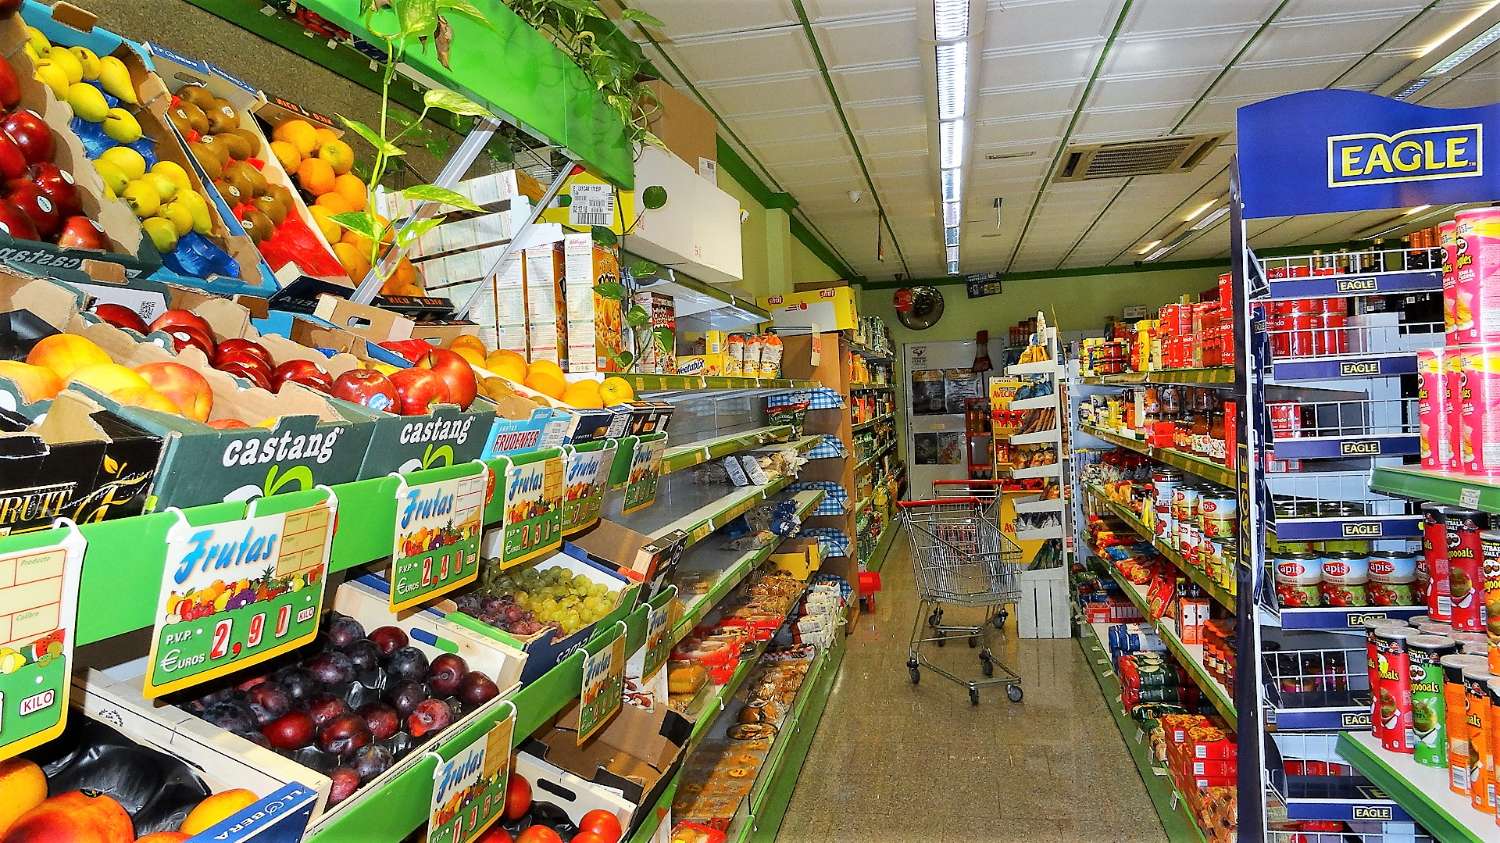 Business in vendita :Supermercato & Grill polli - Da asporto - Benalmadena Costa del Sol - Spagna